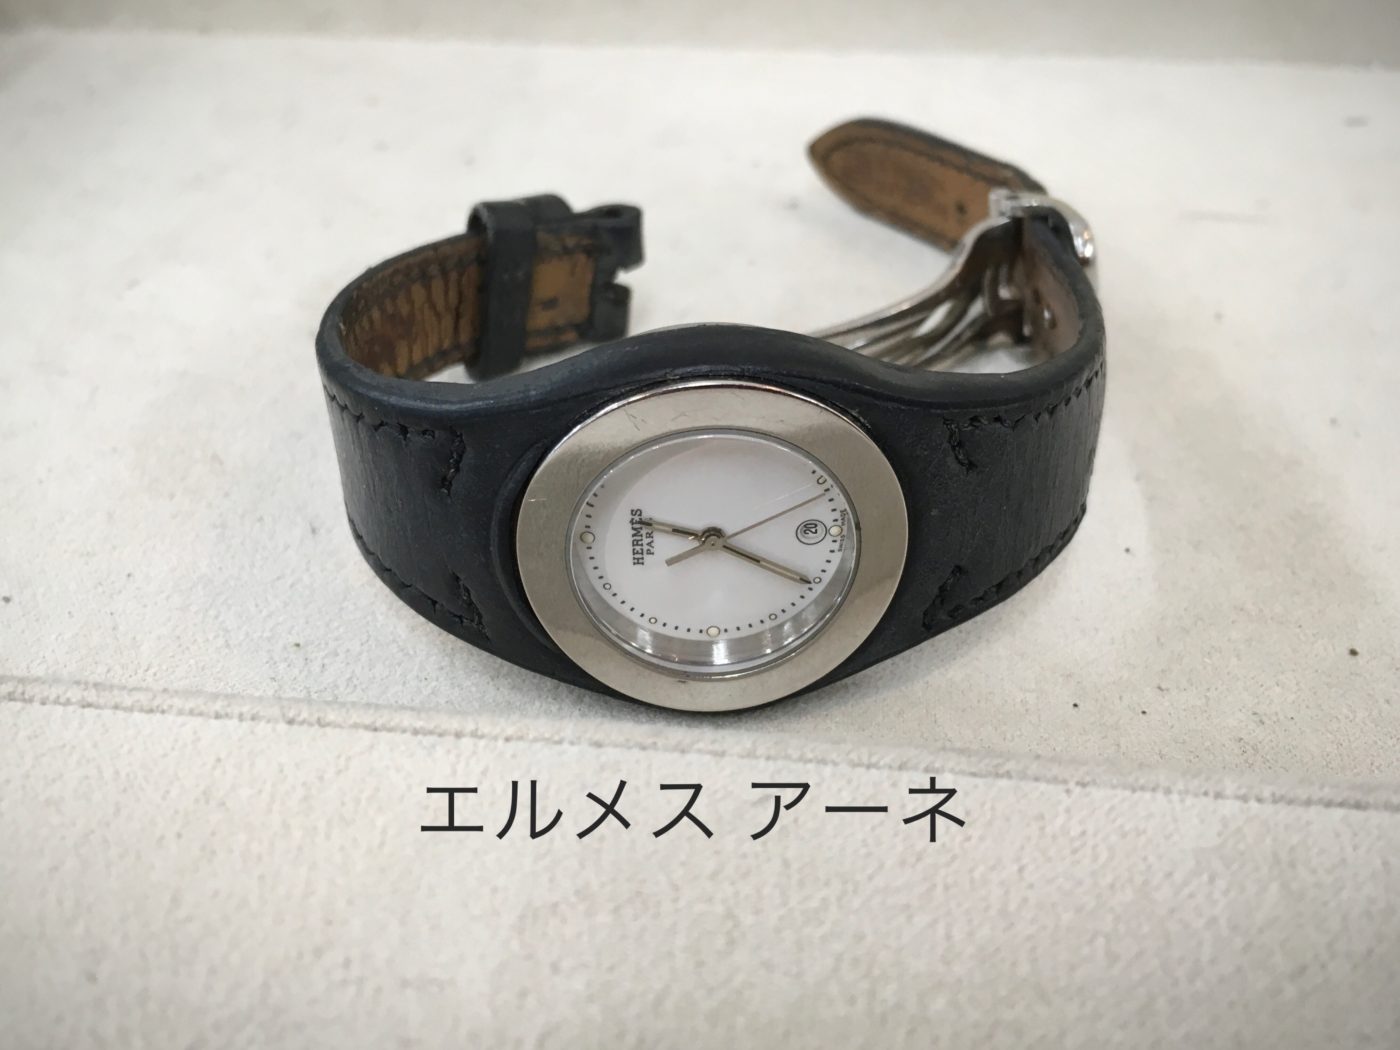 エルメス アーネ クリッパーの腕時計電池交換 メンテナンスオプト オプトナカムラのメンテナンス リフォーム